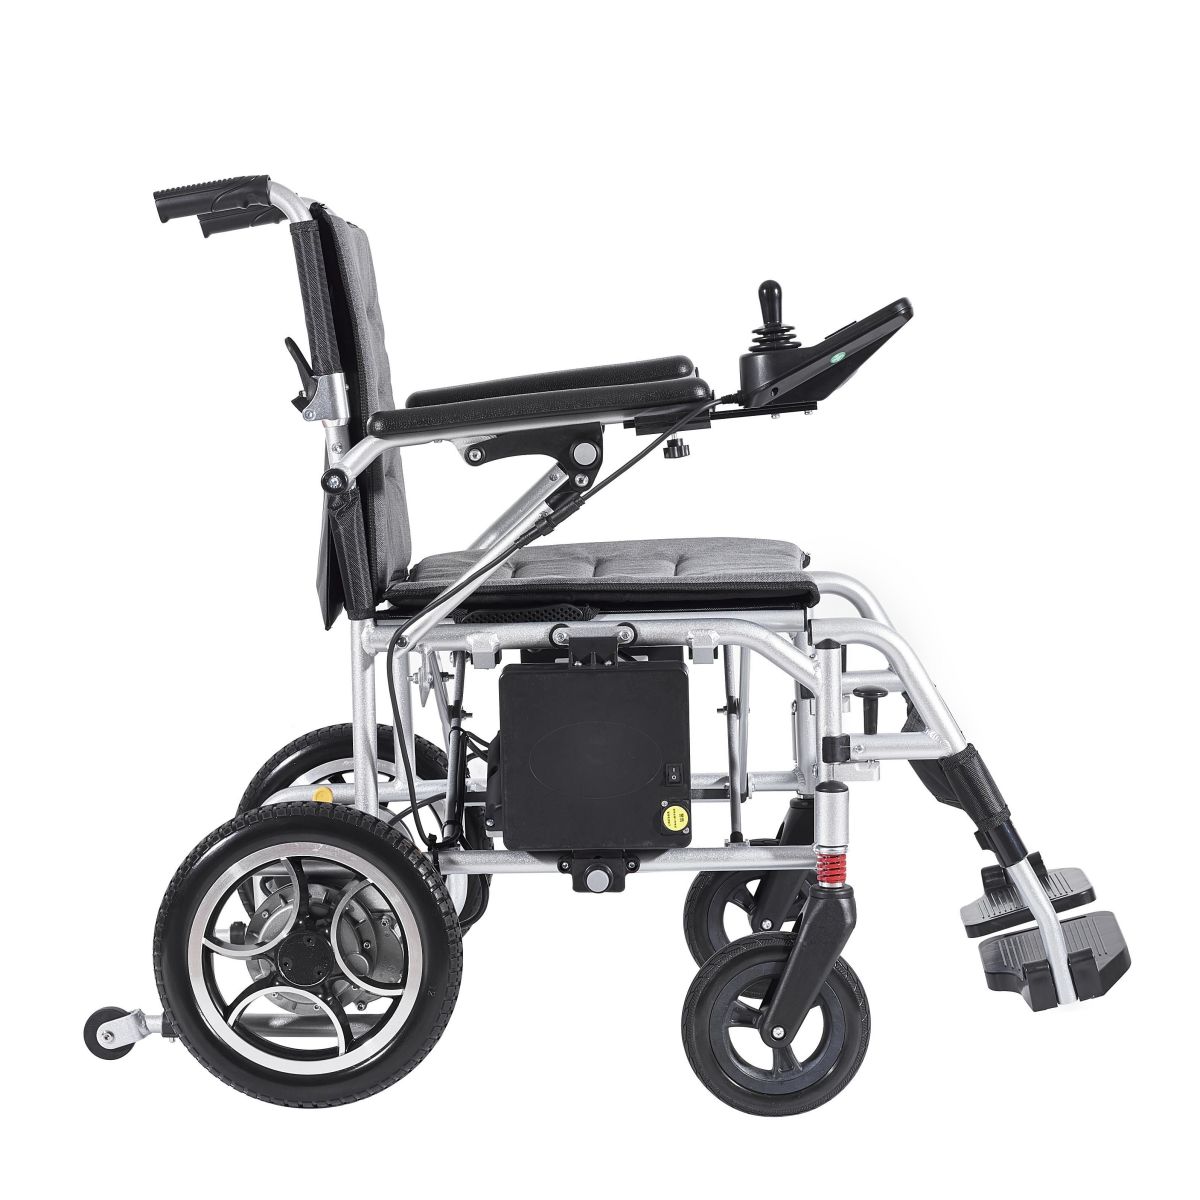 Çin taşınabilir elektrikli tekerlekli sandalye tedarikçisi: elektrikli tekerlekli sandalye seçimiyle ilgili bilgi noktaları